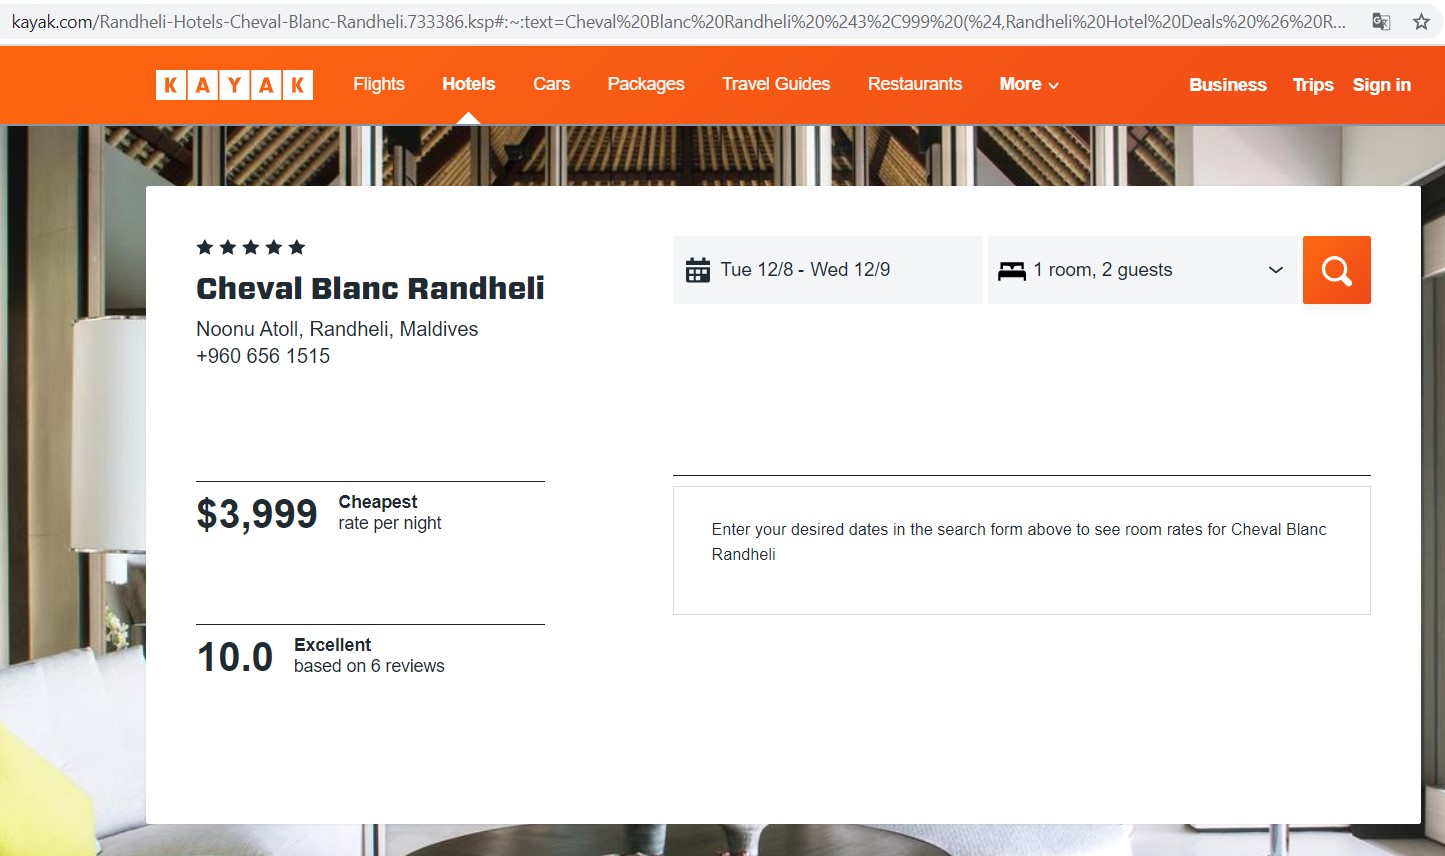 Самая дешевая цена за ночь в отеле Cheval Blanc Randheli. Скрин: сайт туристического метапоисковика Kayak